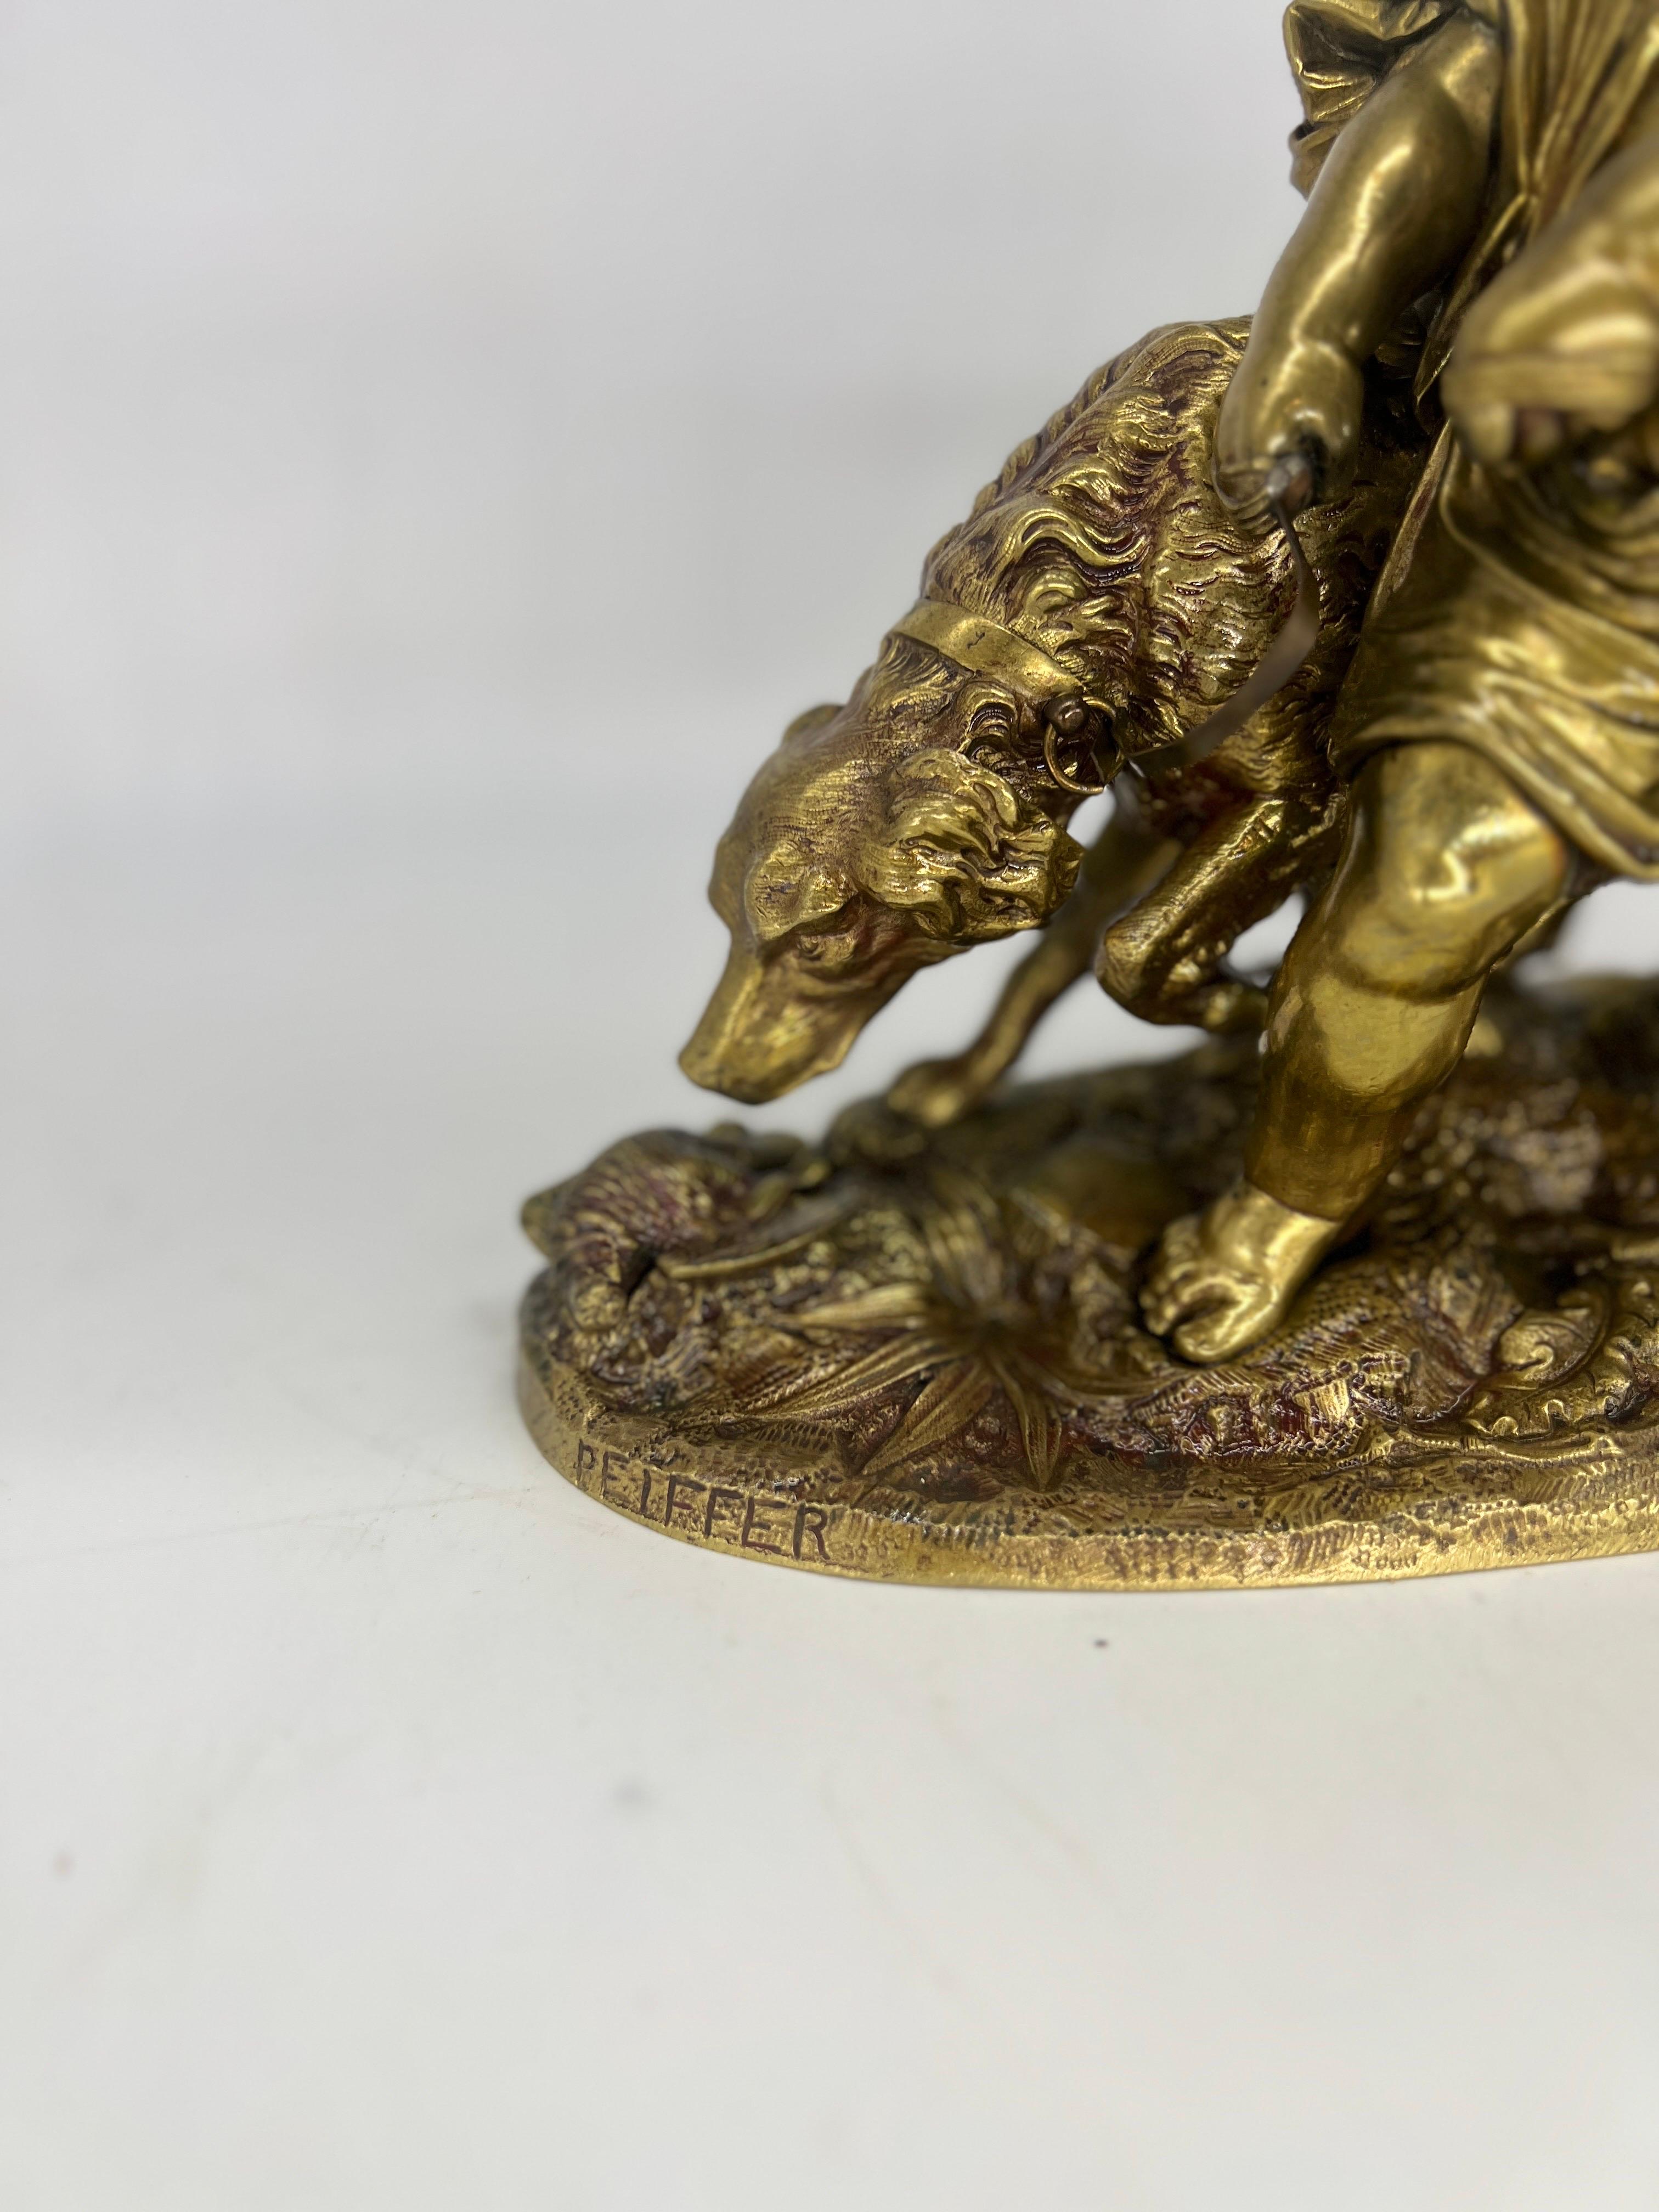 Auguste Joseph Peiffer (1832-1886), französischer Bildhauer, geboren in Paris, der vor allem Bronzen mit allegorischen und mythologischen Motiven schuf.
Dieses Werk zeigt ein schönes Kind, das seinen Jagdhund an der Leine hält und ihn daran hindert,